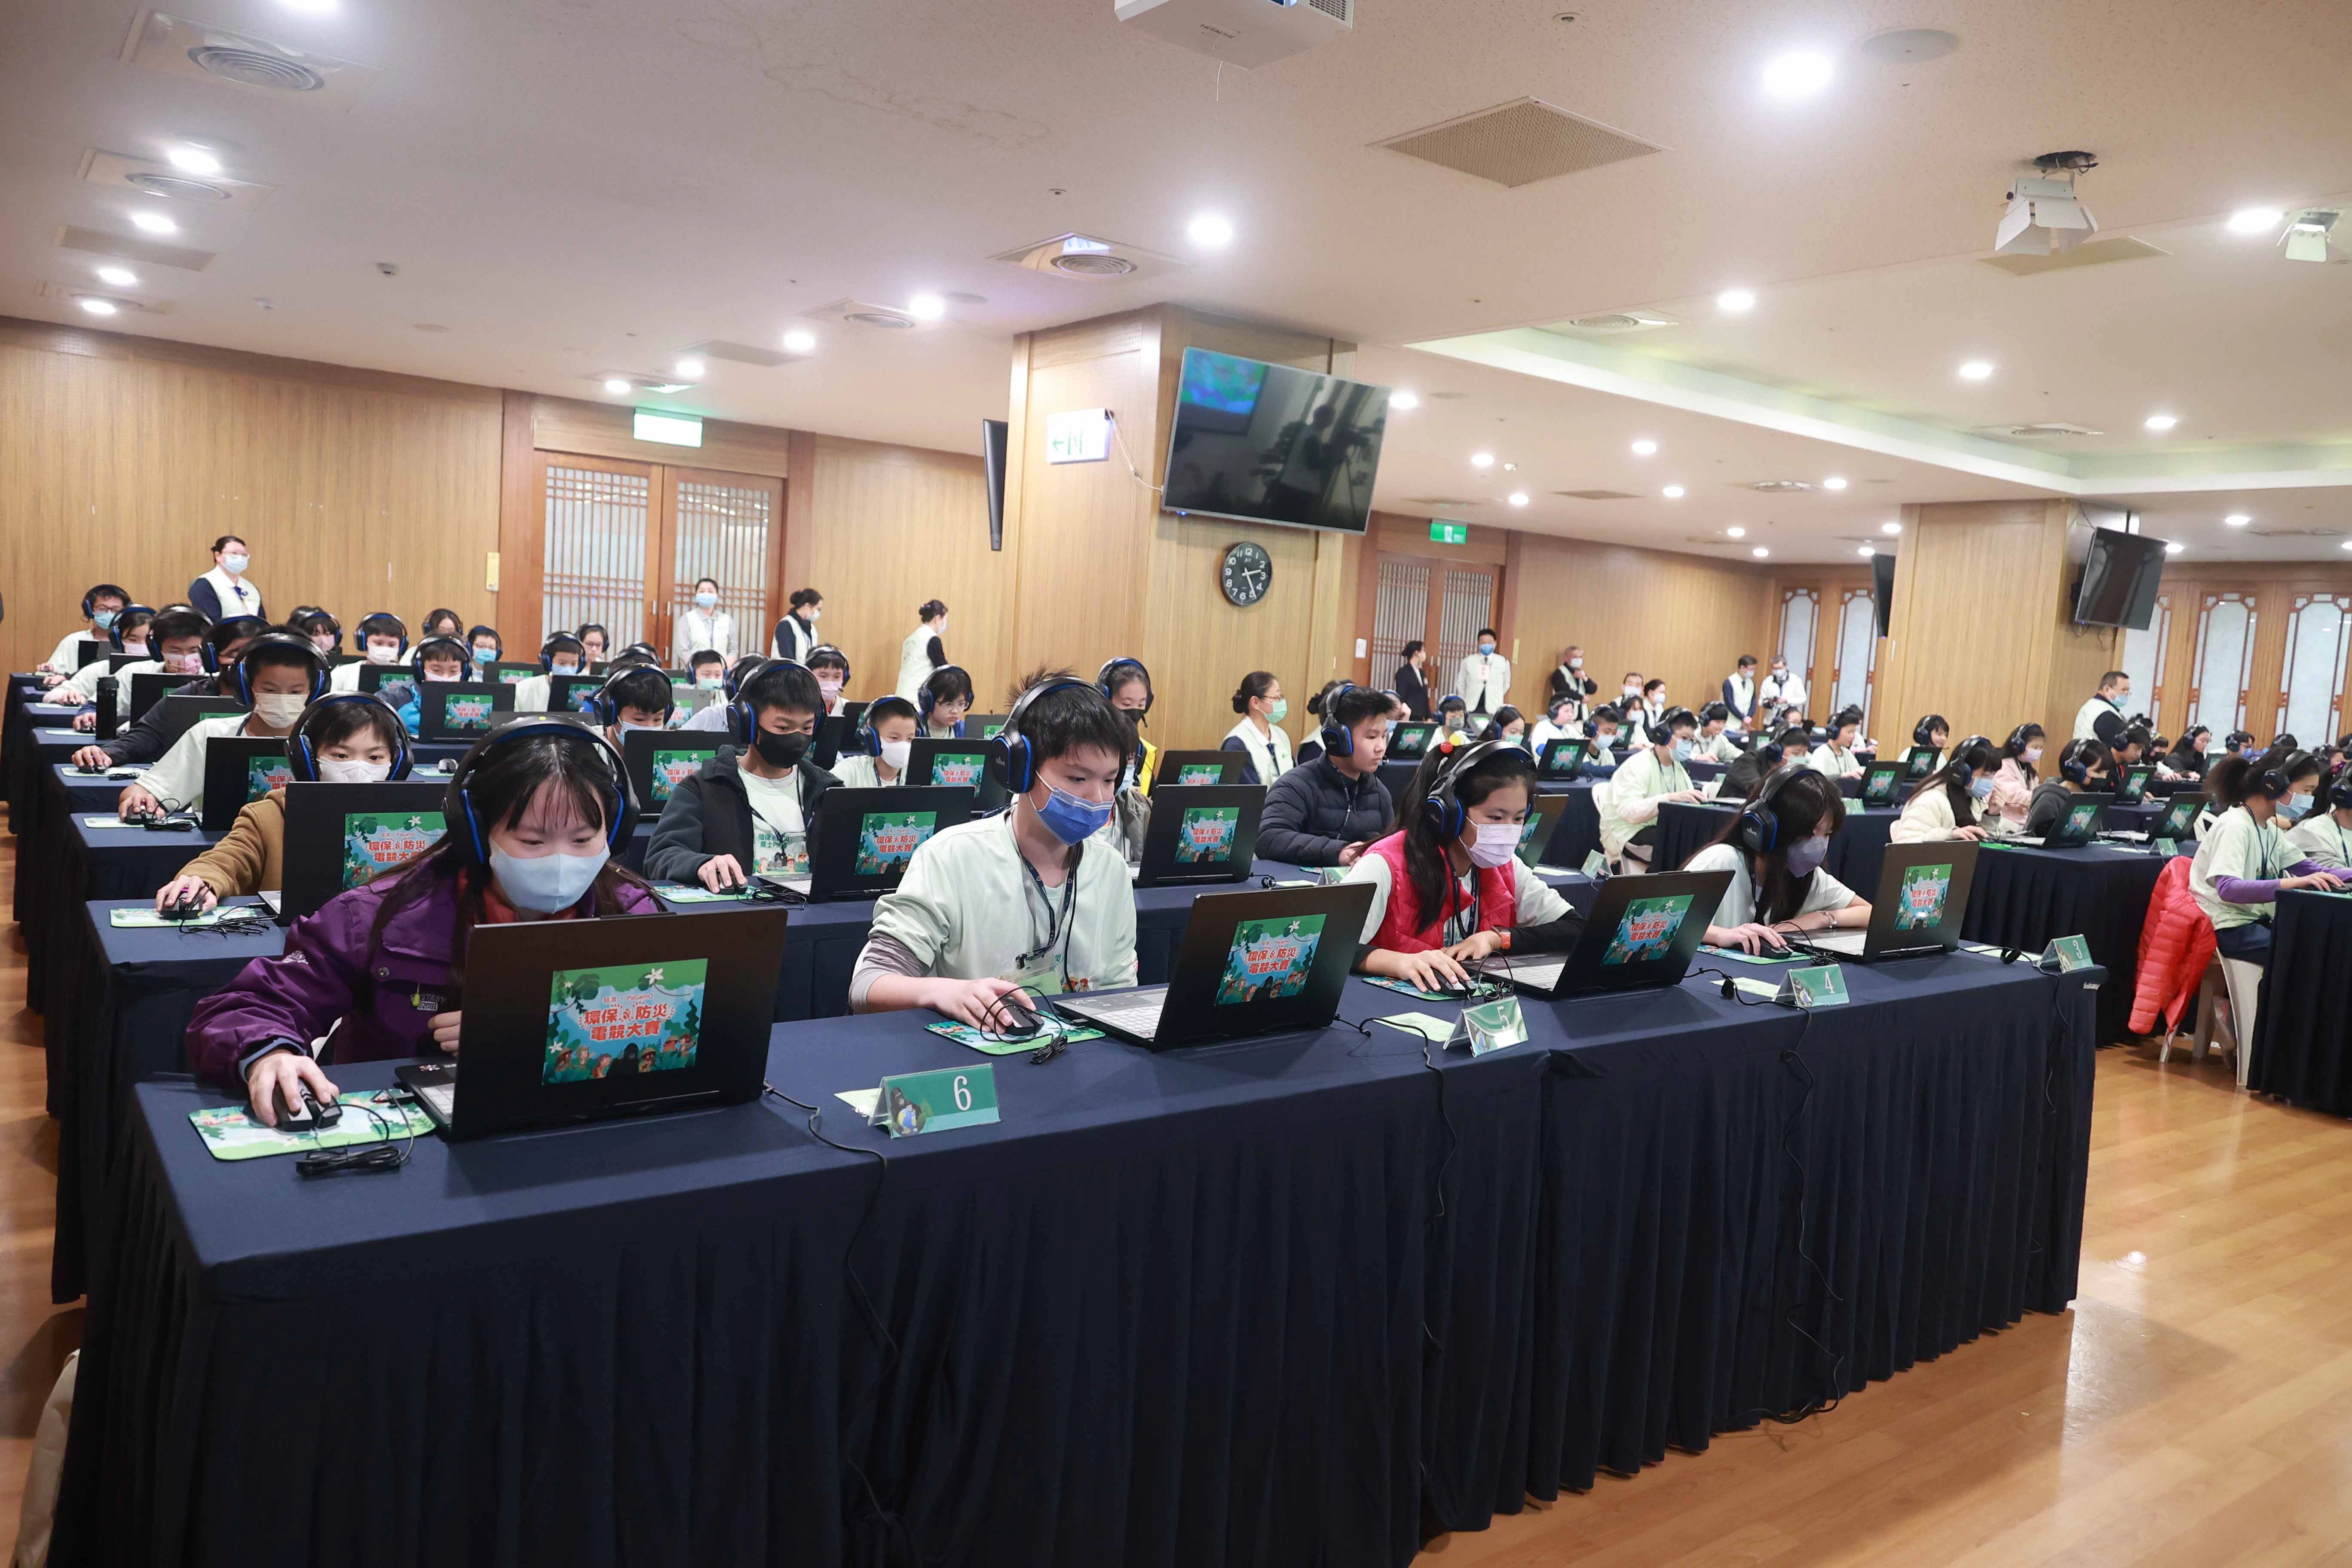 3月10日由臺北市政府與慈濟基金會攜手繼續舉辦第三屆臺北市縣市盃環保防災電競賽。